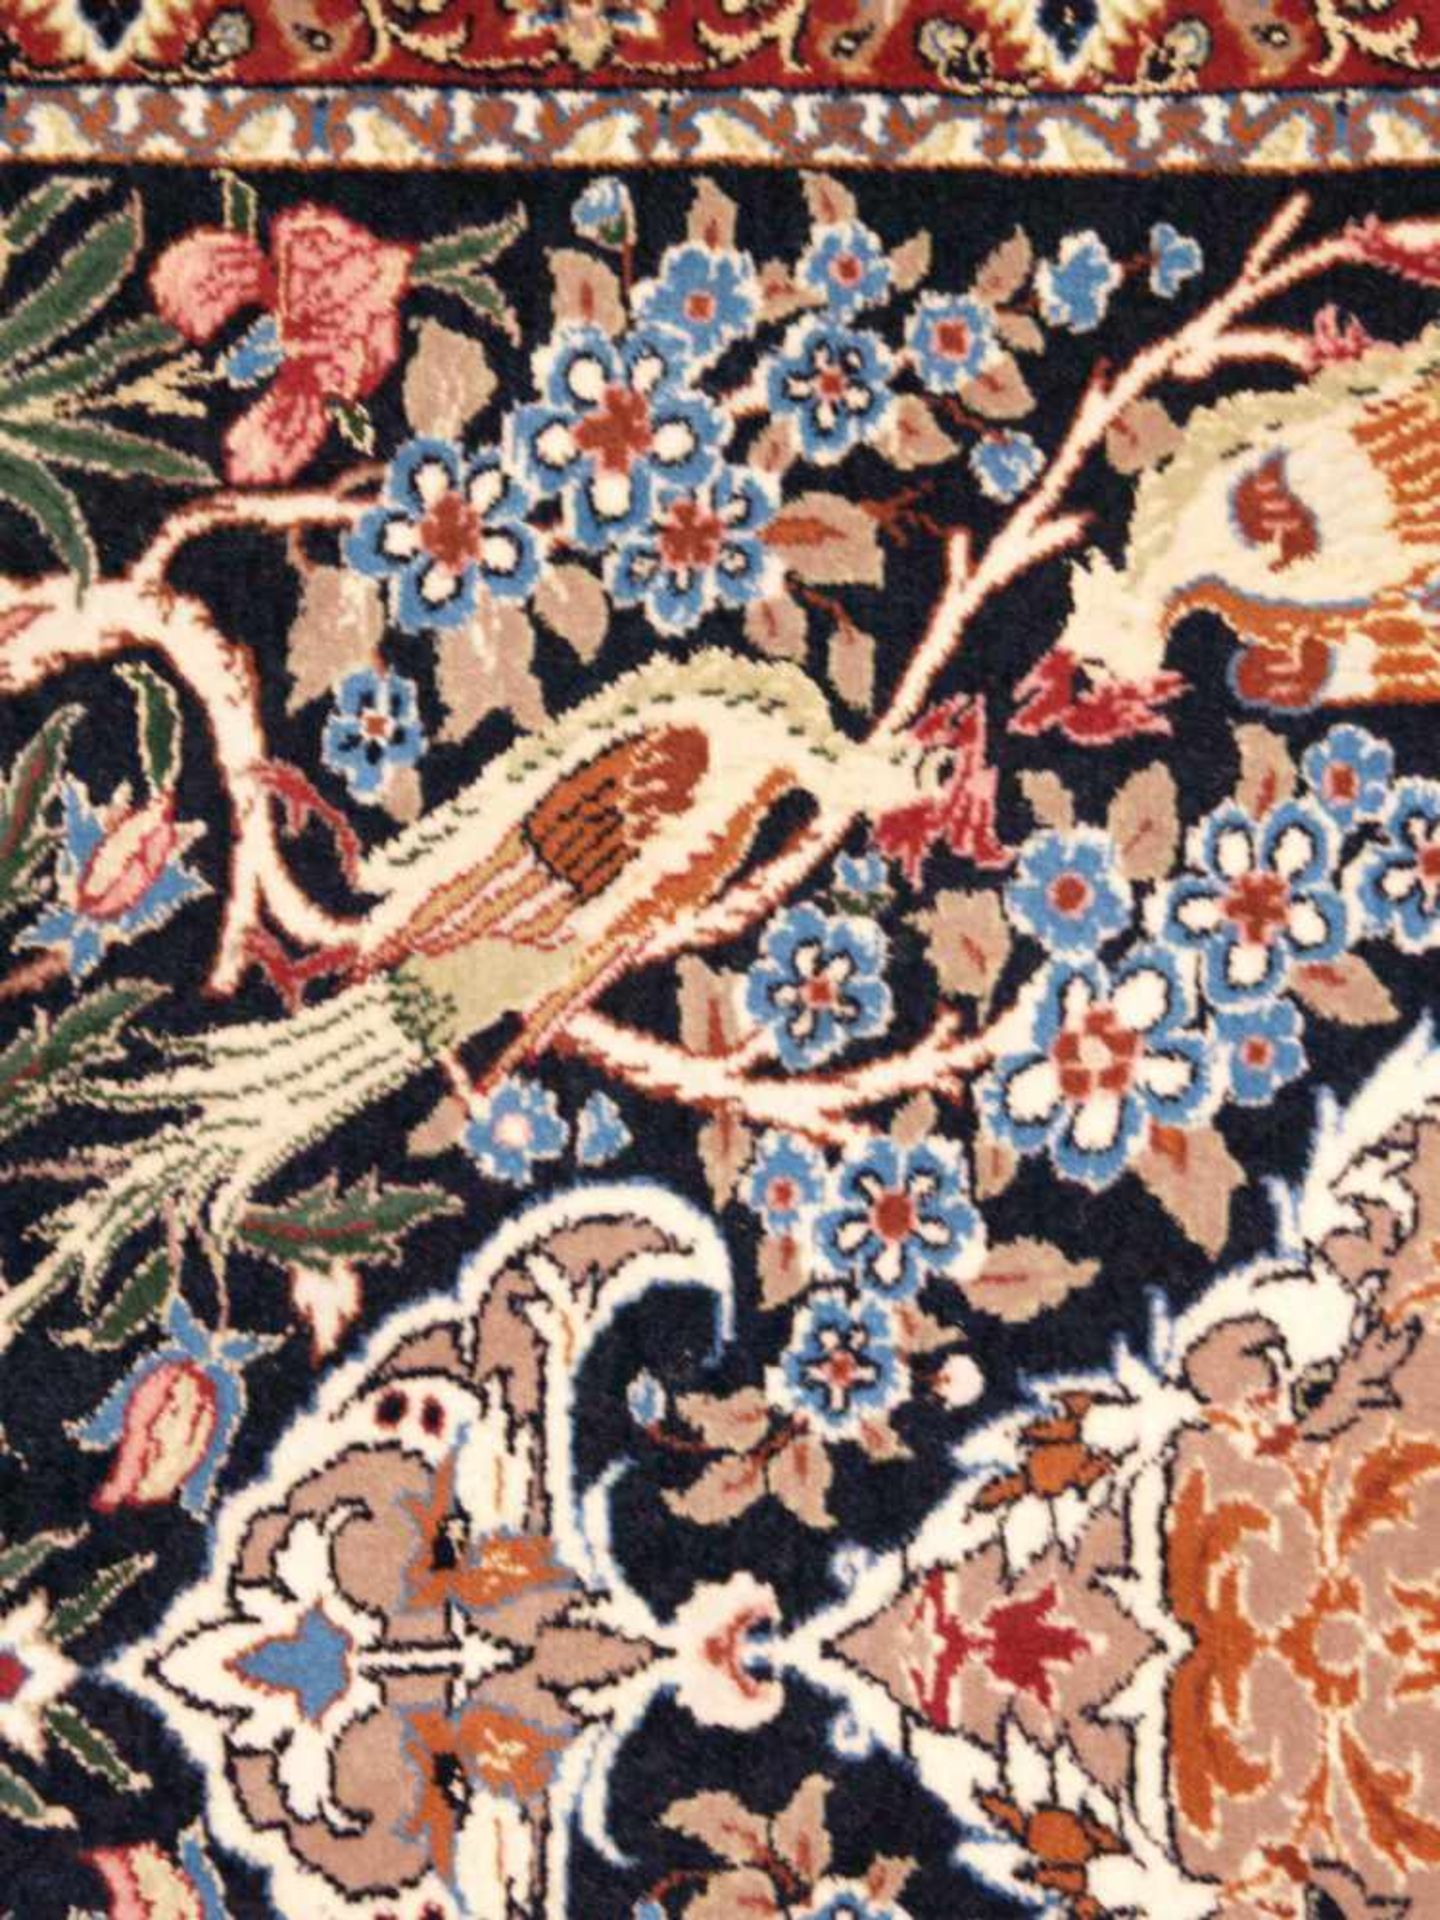 Orientteppich - Wolle und Seide, blaugrundig, zentrale florale Kartusche, gerahmt von Vögeln, - Bild 10 aus 11